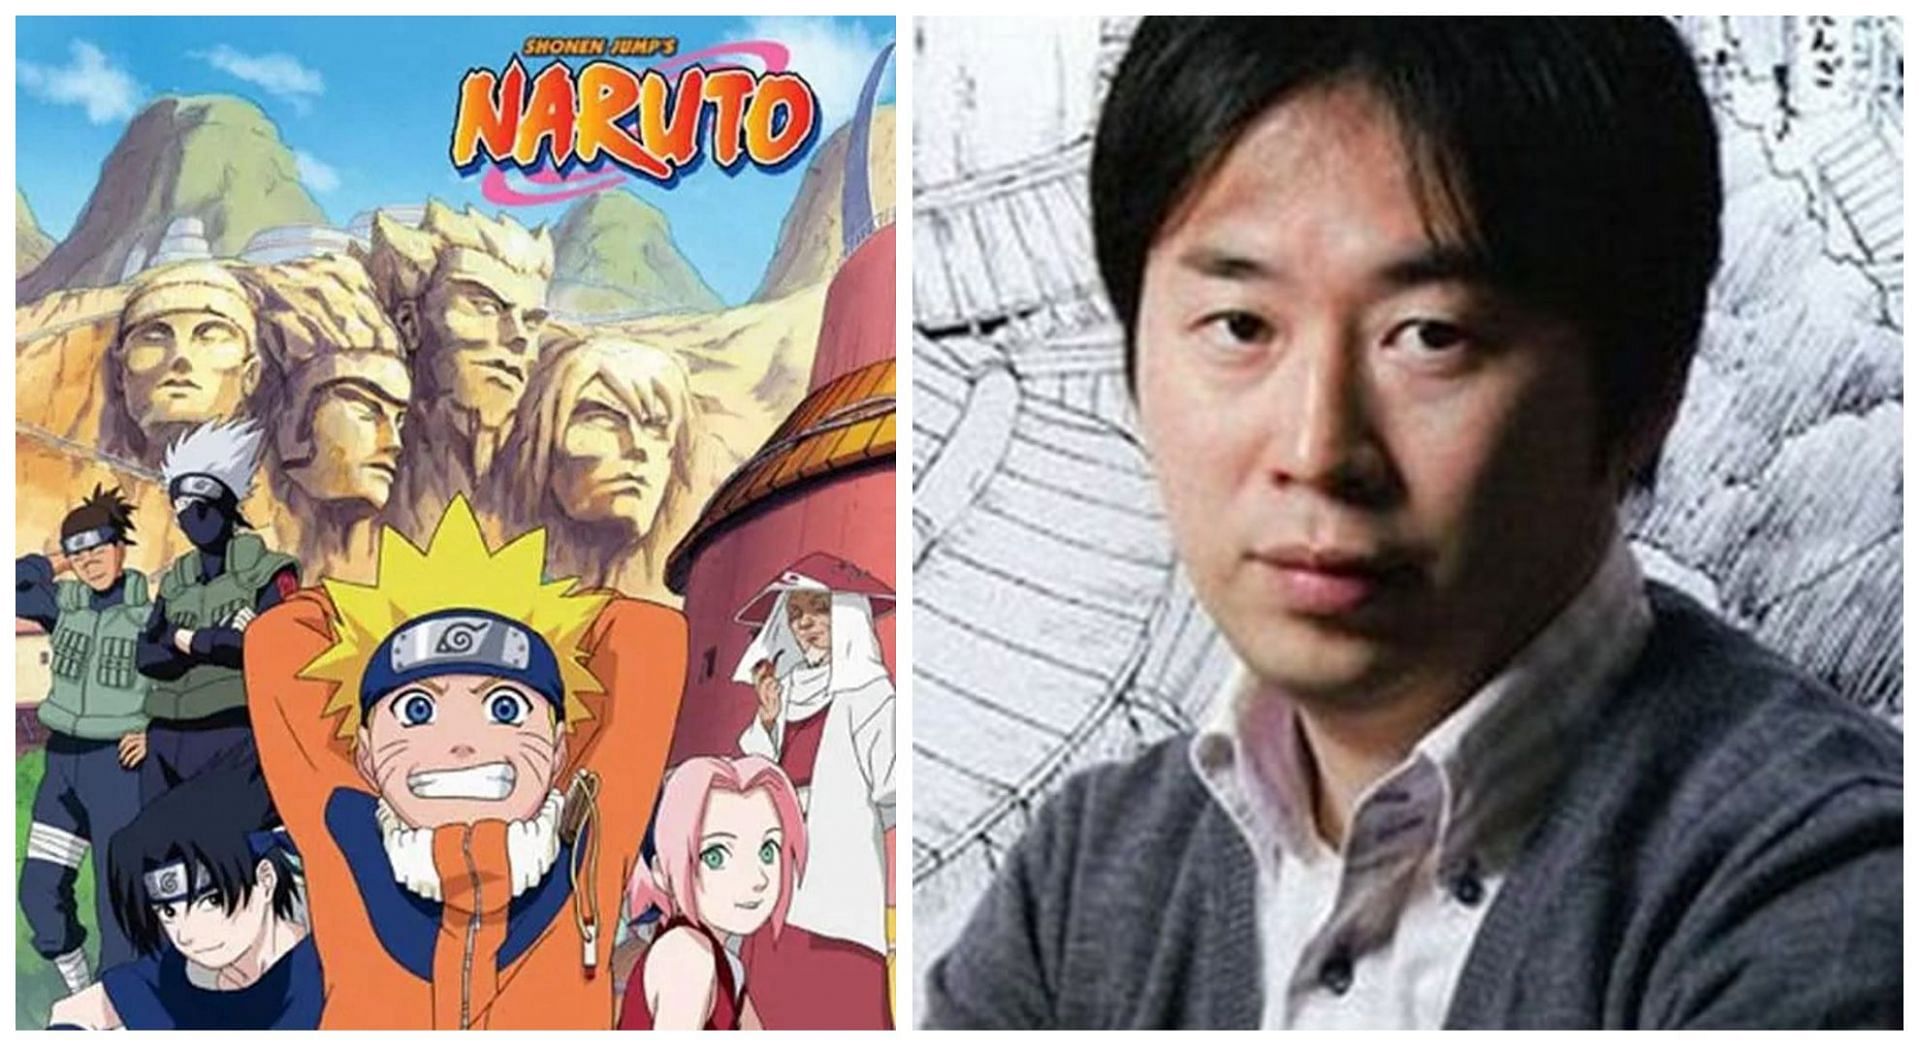 Naruto&#039;s creator Masashi kishimoto (Image via Sportskeeda)